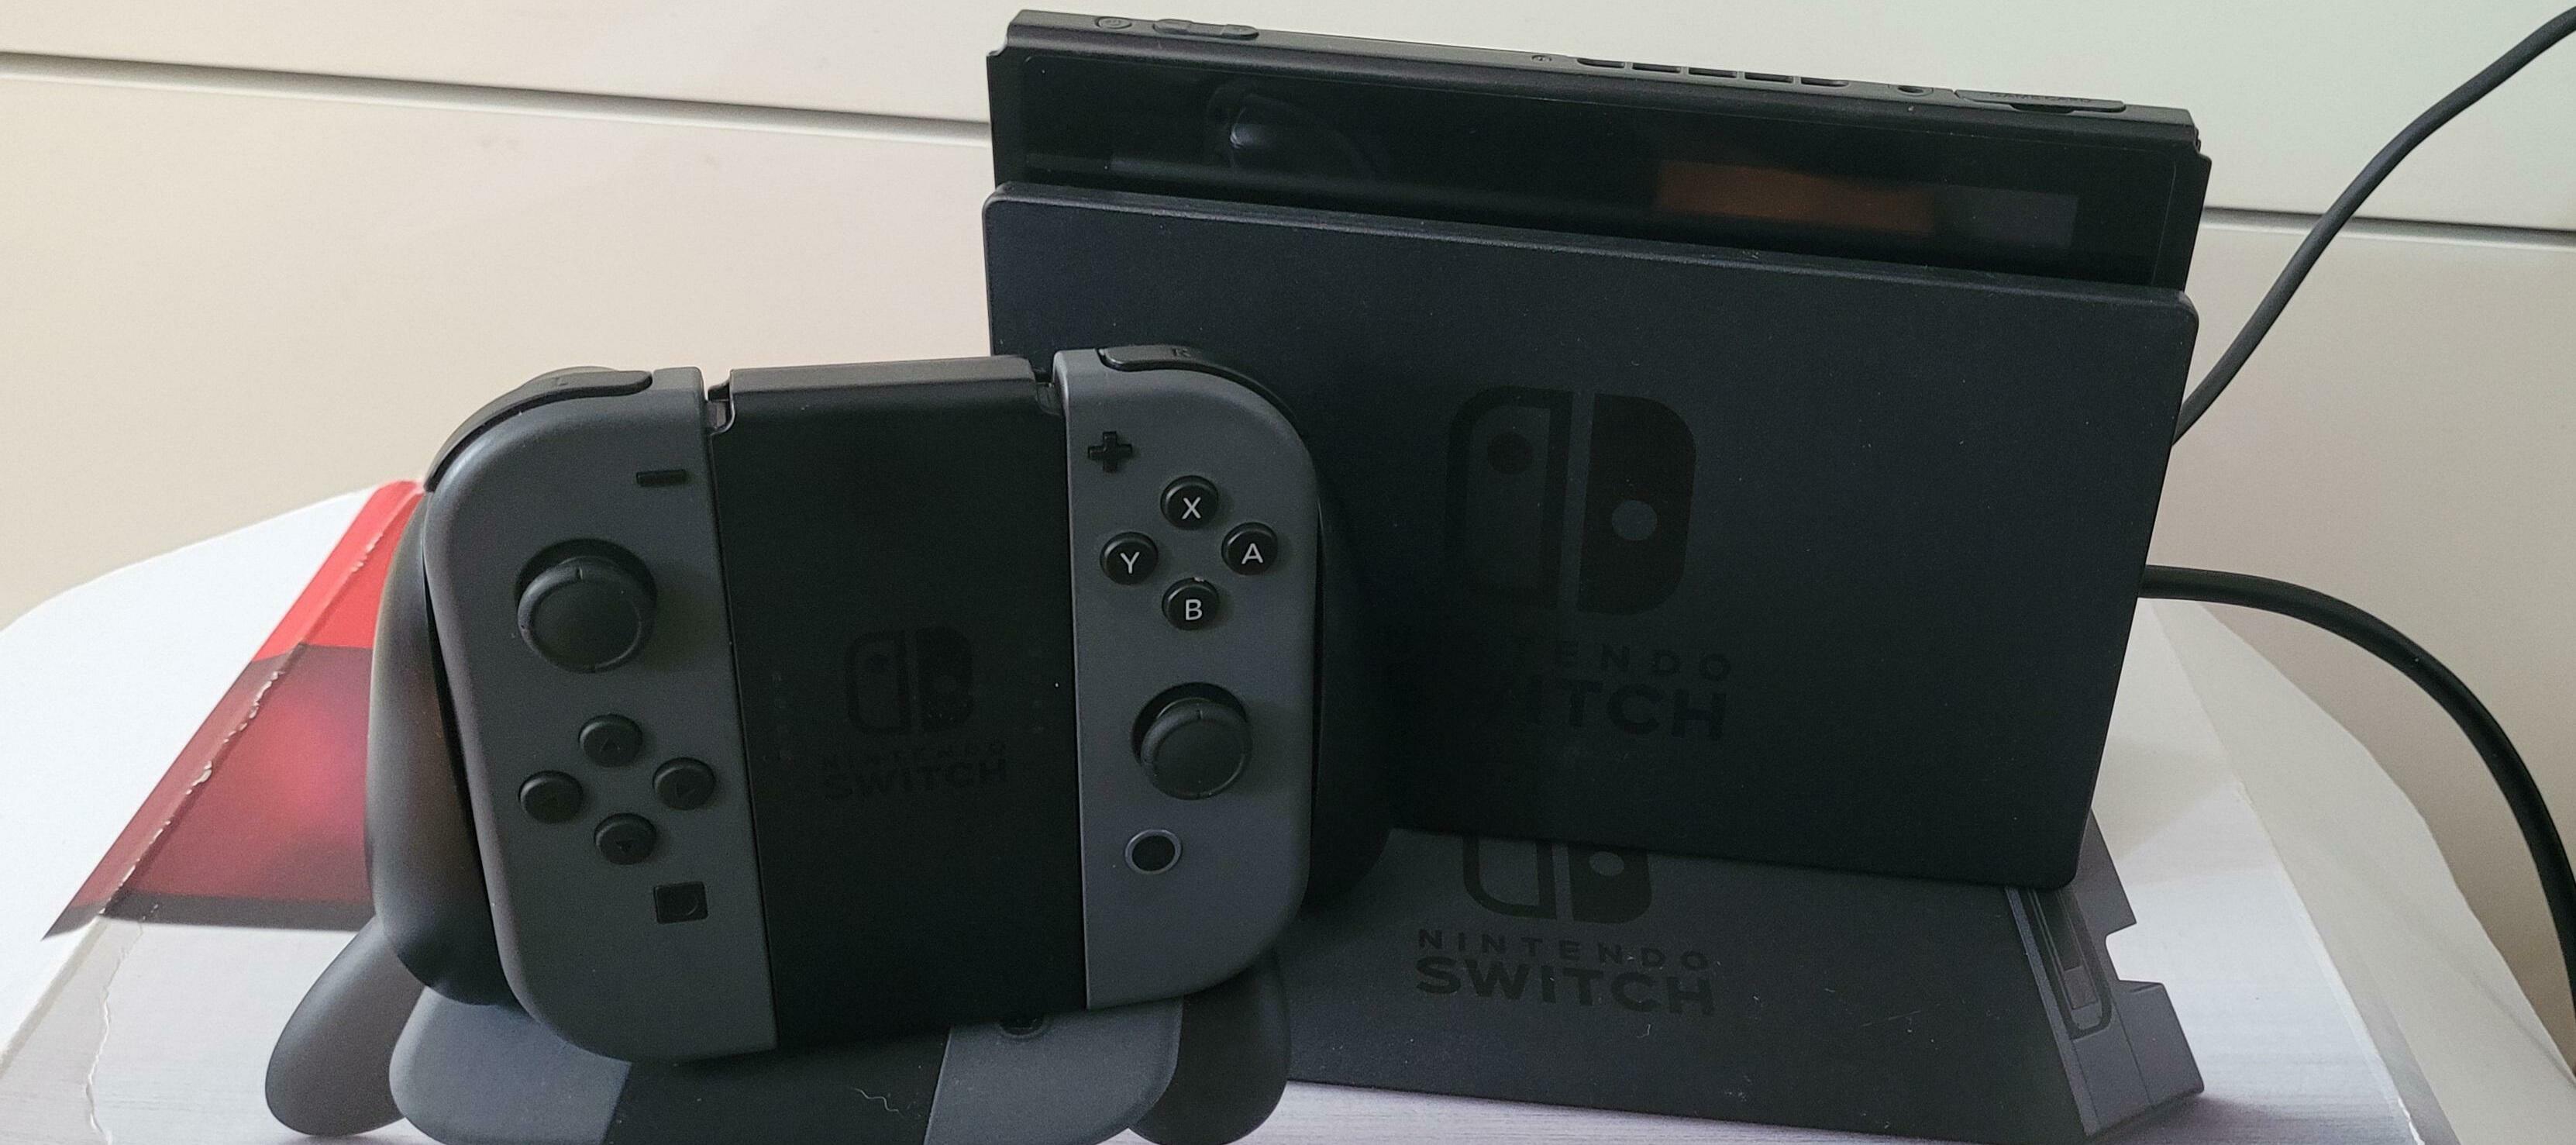 Testbericht Nintendo Switch, Abbruch / Aufgabe nach 24h